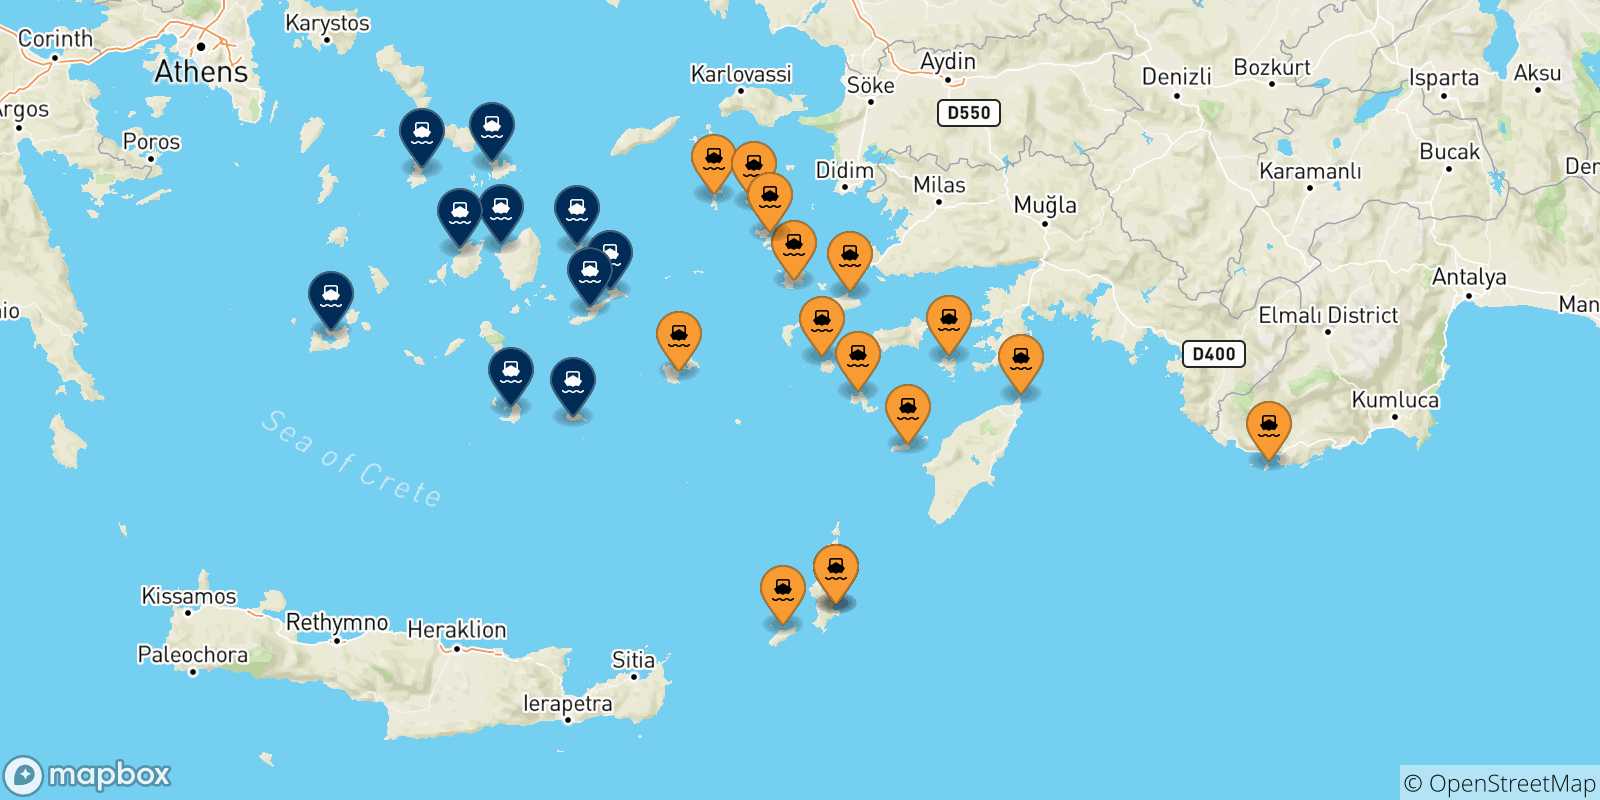 Mappa delle possibili rotte tra le Isole Dodecaneso e le Isole Cicladi